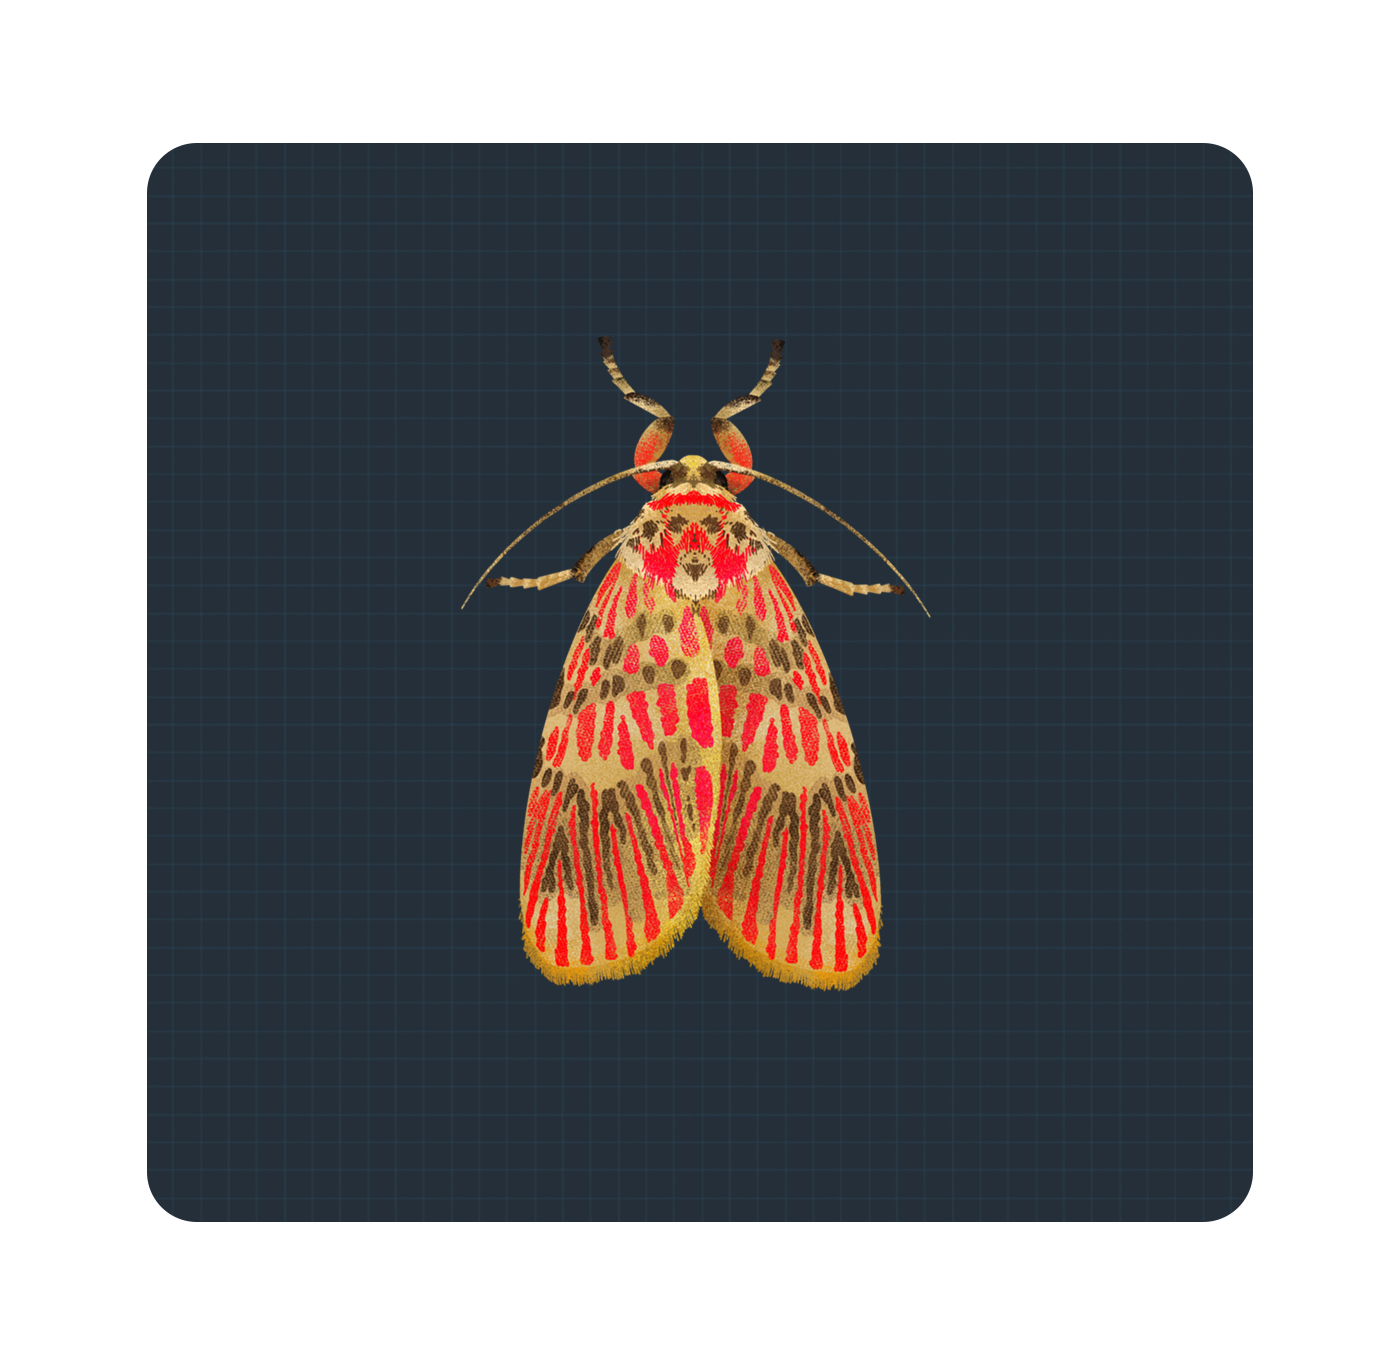 Moth Illustrations |  | Makemark